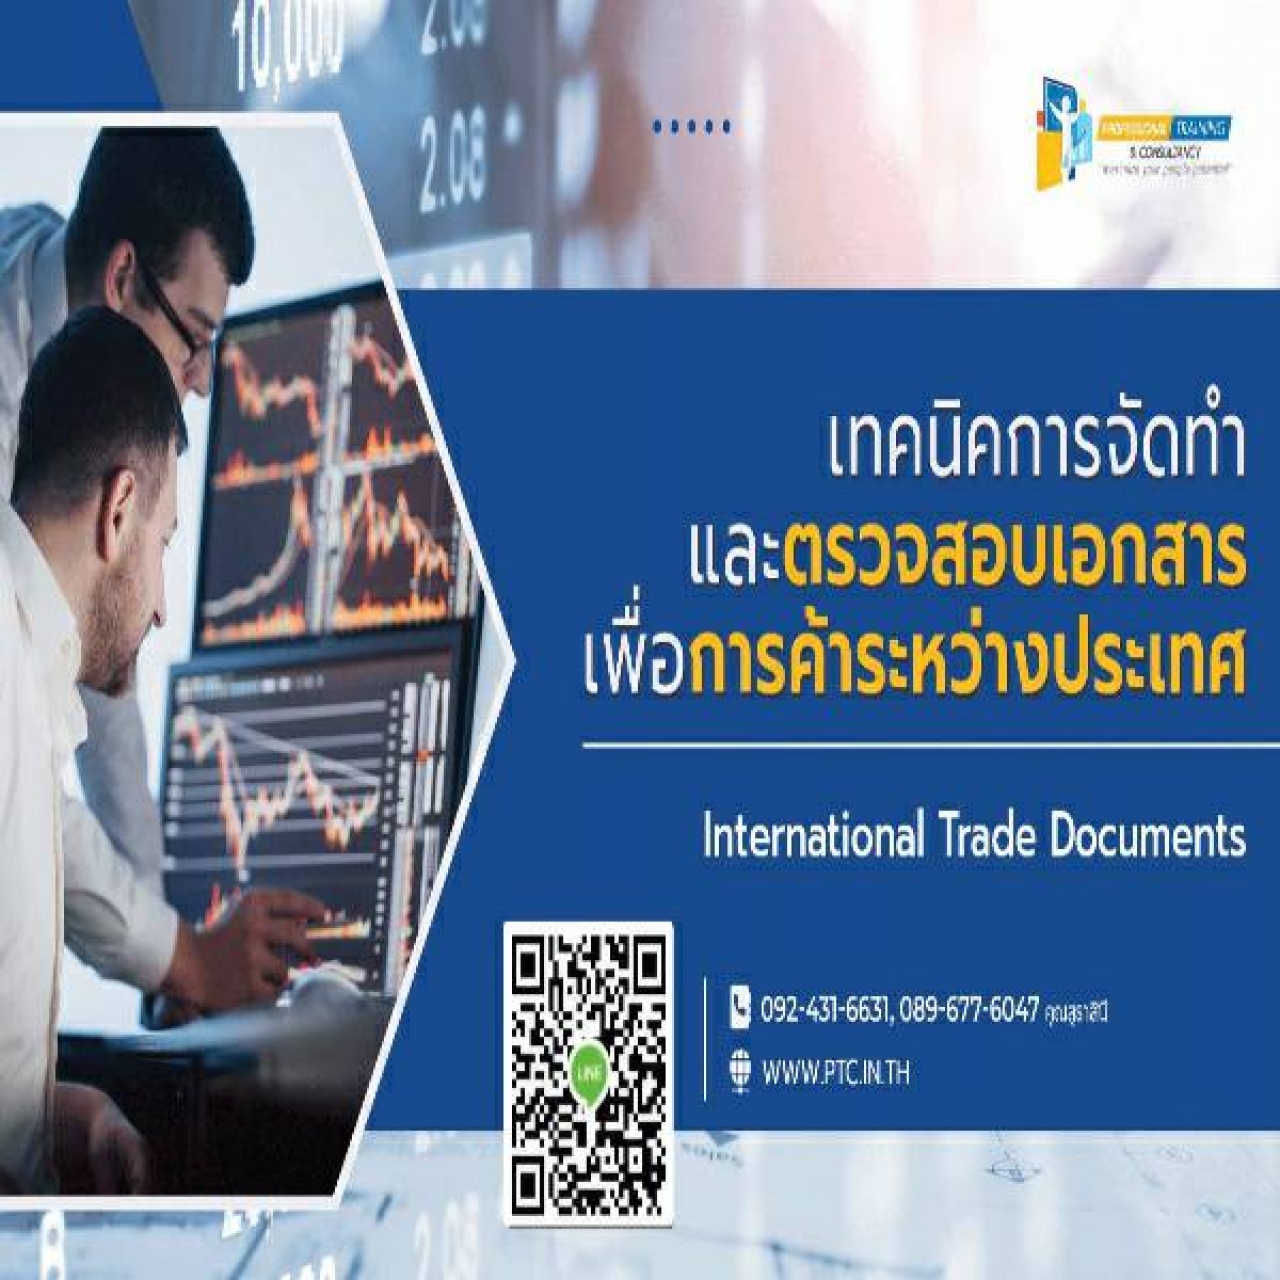 เทคนิคการจัดทำเอกสารเพื่อการค้าระหว่างประเทศ" (International Trade Documents)